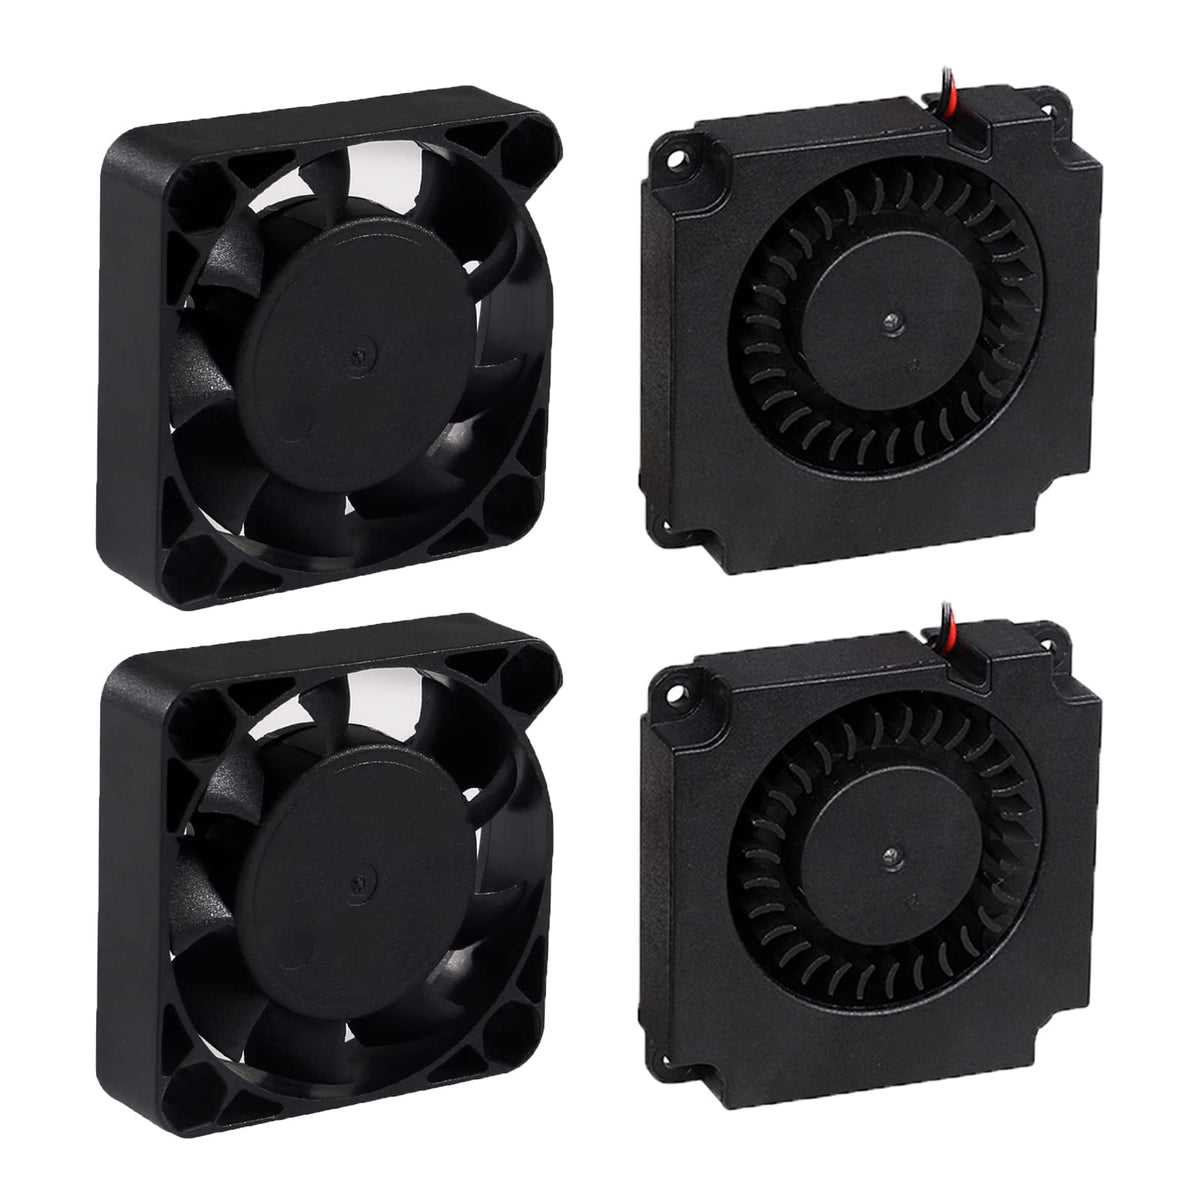 ALAMSCN 2PCS 4010 40mm Brushless Cooling Fan 24V and 2PCS 40mm Blower Fan 24V 3D Printer Fan 40x40x10mm Compatible with Ender 3 / Ender 3 pro/Ender 3 V2/Ender 5 Series